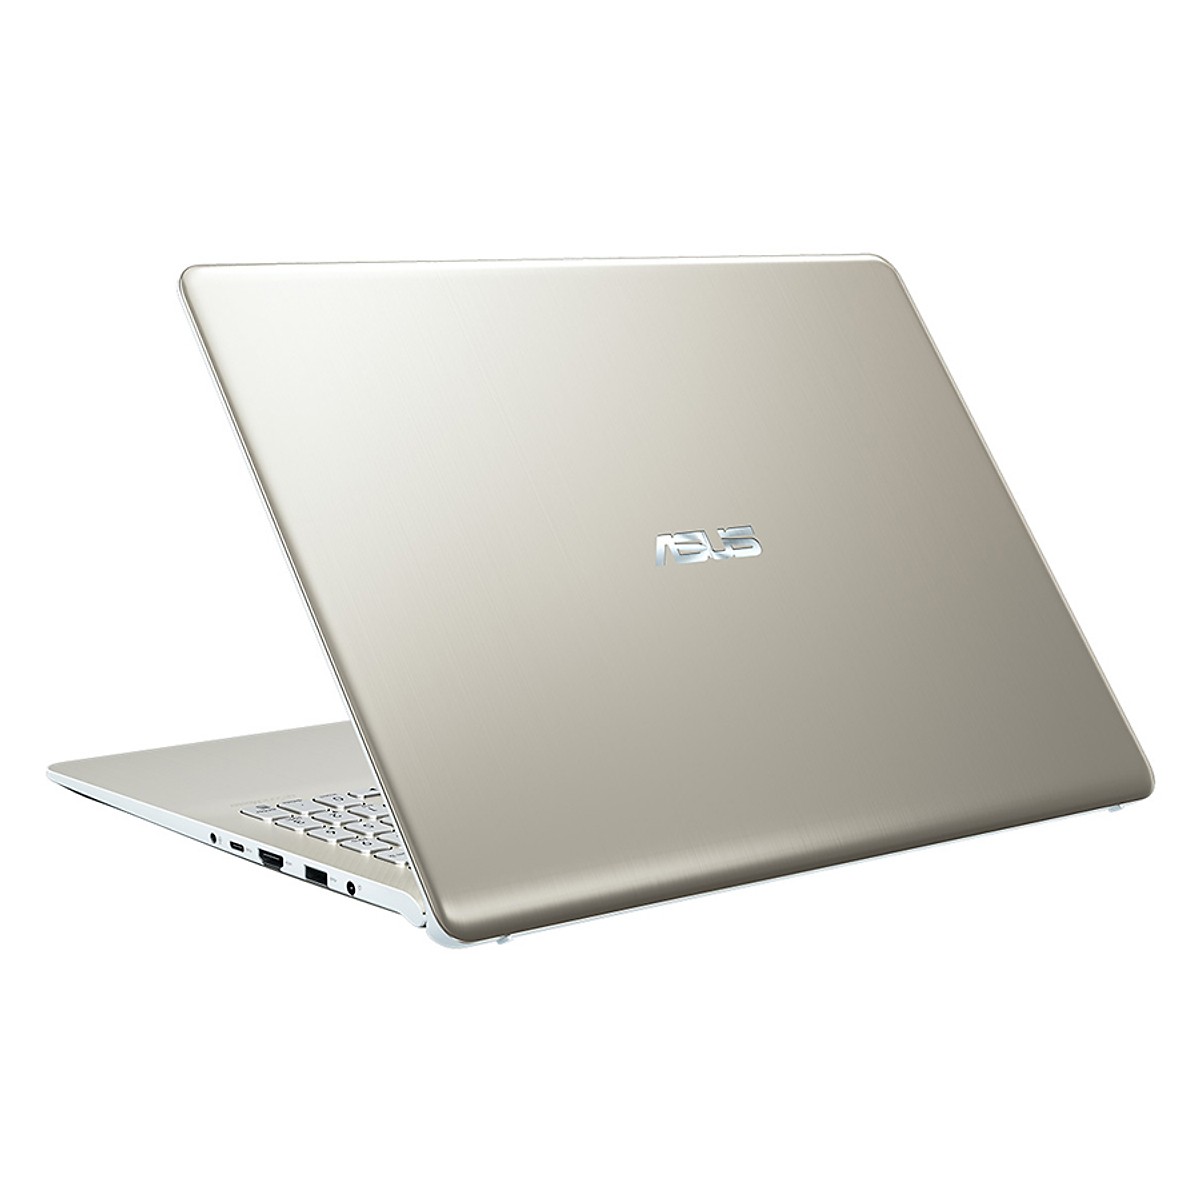 Laptop Asus Vivobook S530Un-Bq026T I5-8250U | 4Gb | 1Tb | Vga 2G | Win10 |  Golcd | 15.6Fhd